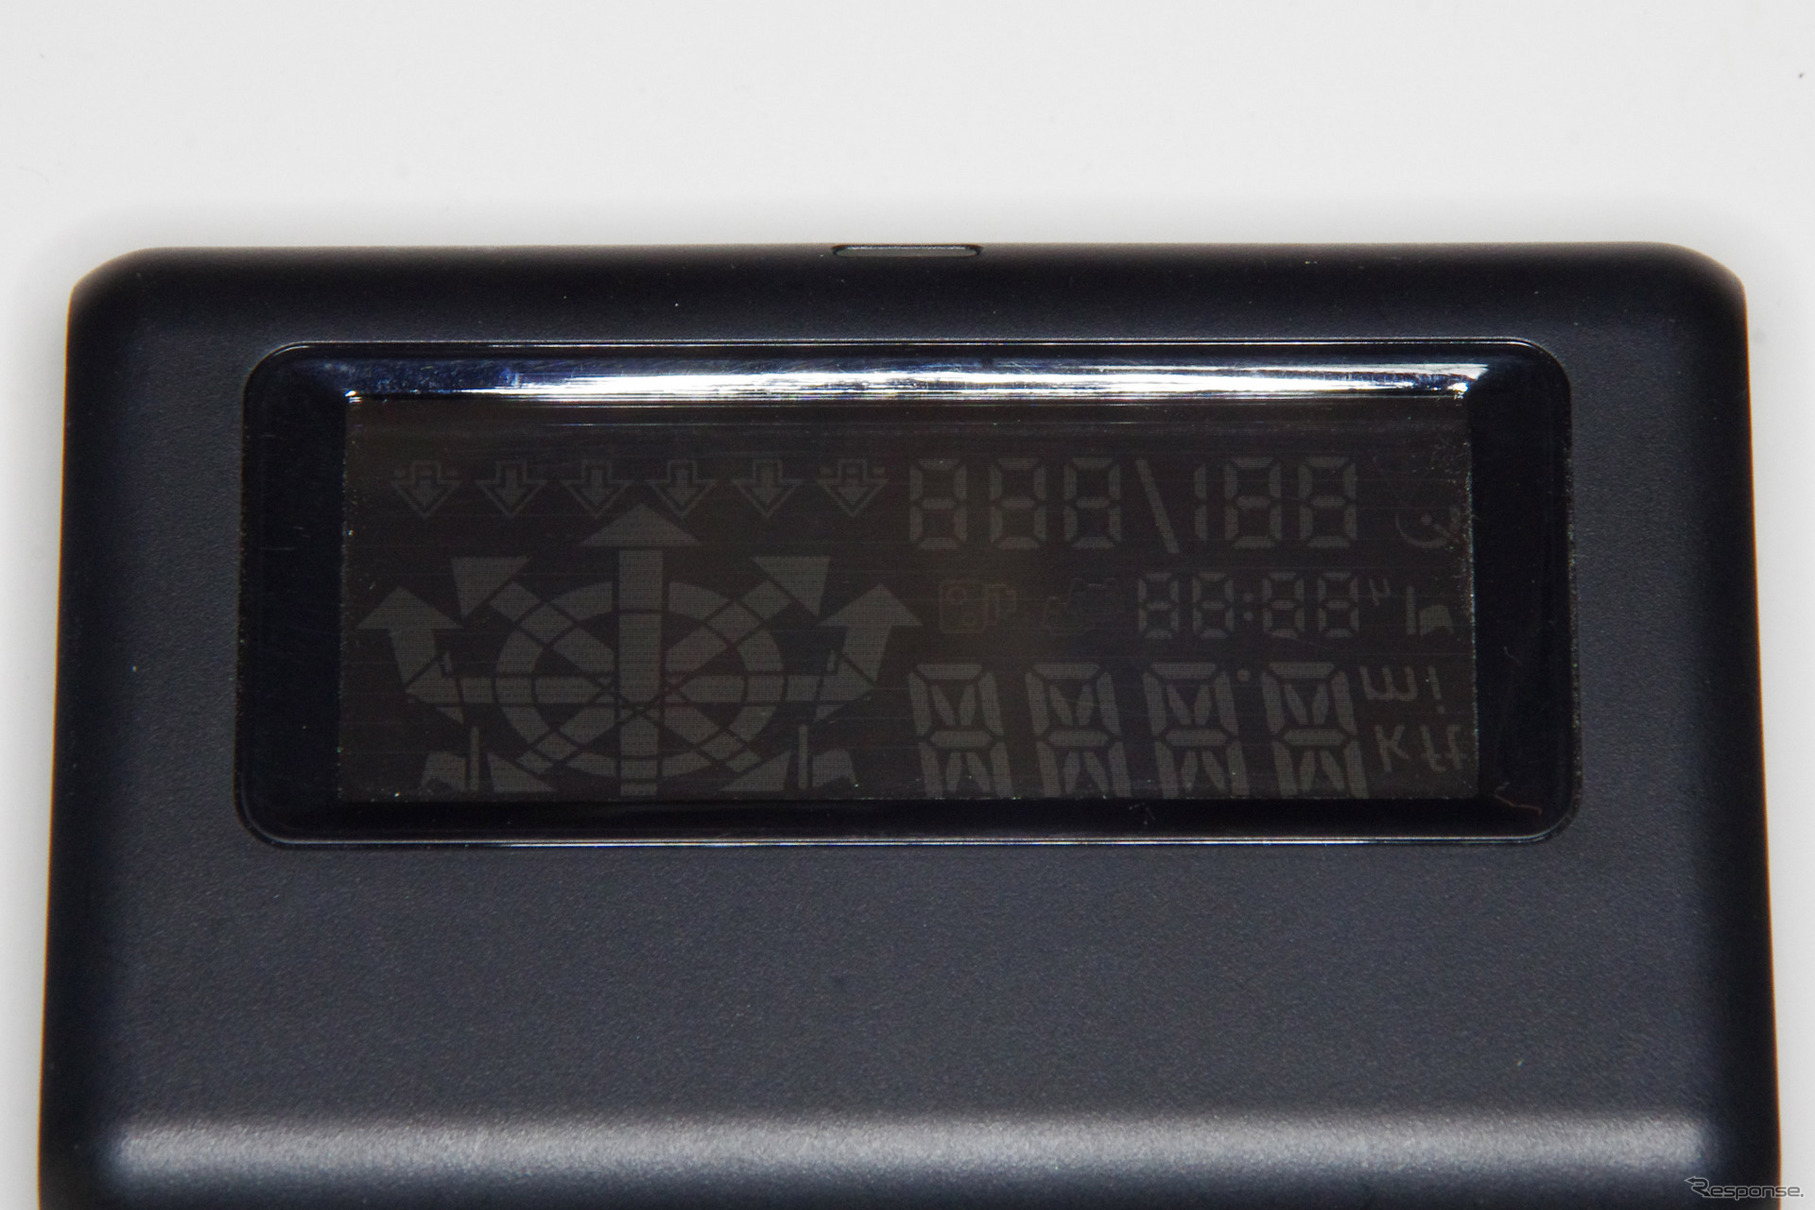 自発光するディスプレイを見ると、矢印部分に円形のセグメントがある。しかし日本仕様では使われないようだ。